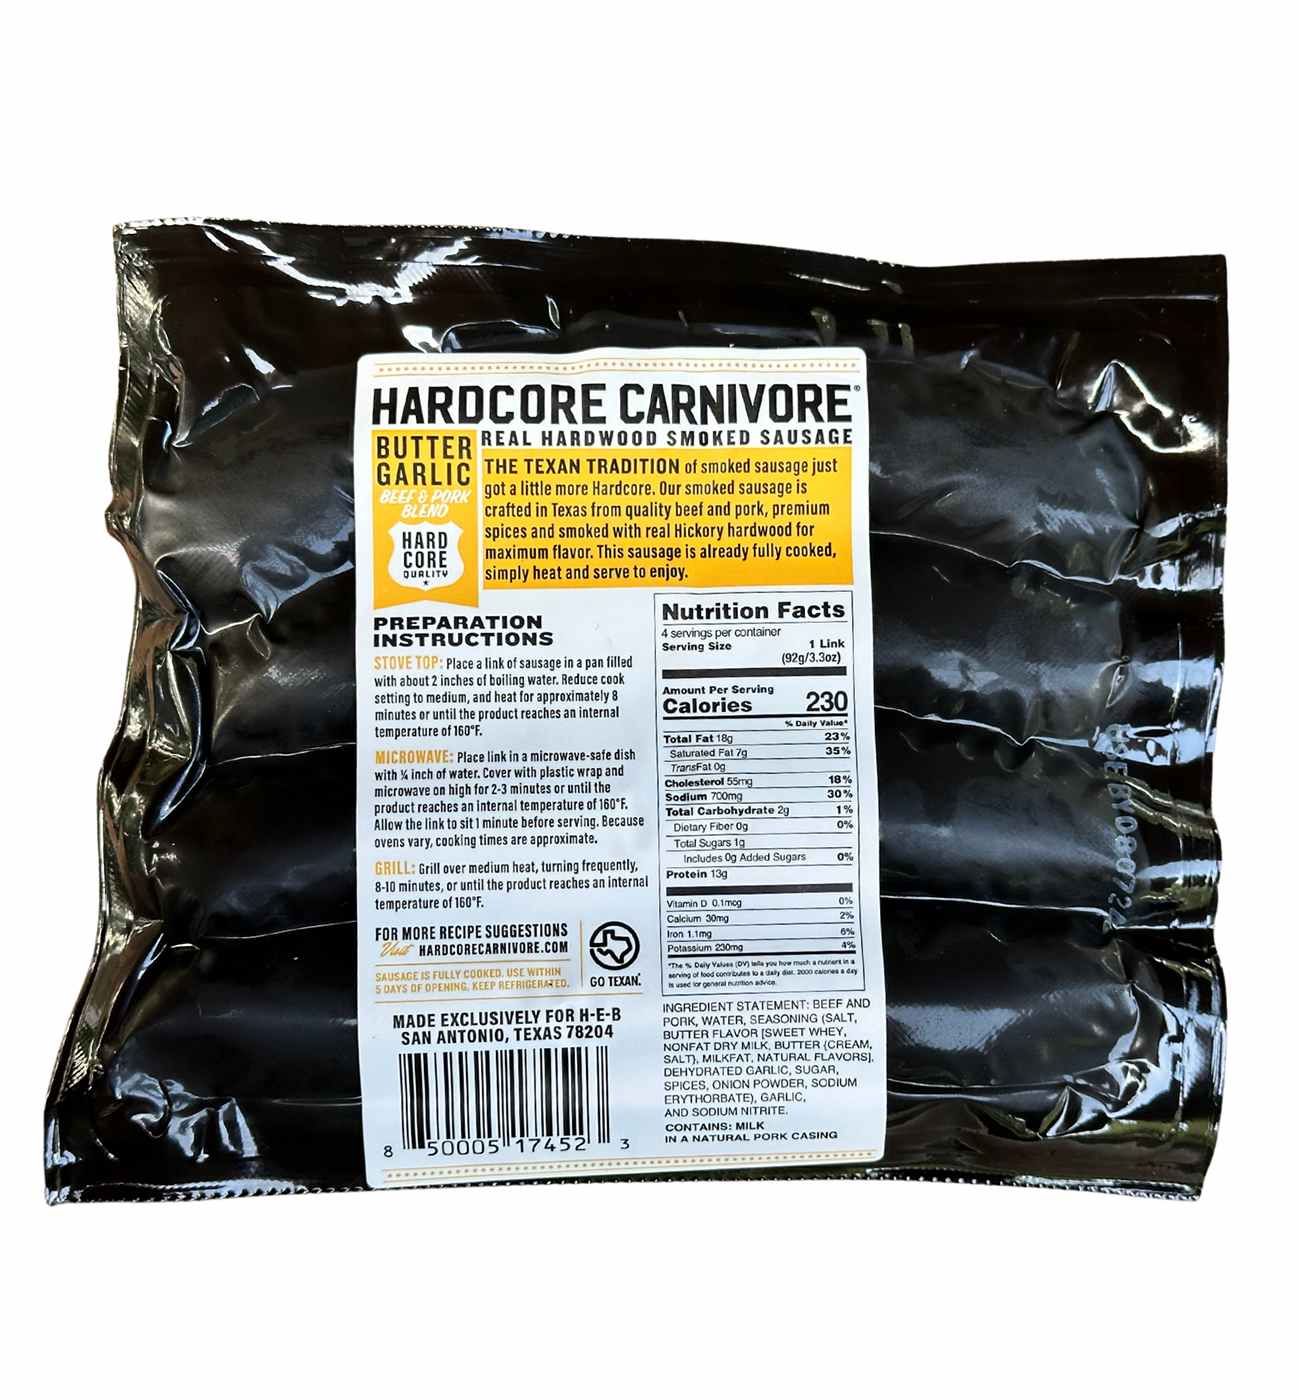 Hardcore Carnivore Smoked Sausage Links - Garlic Butter; image 2 of 2